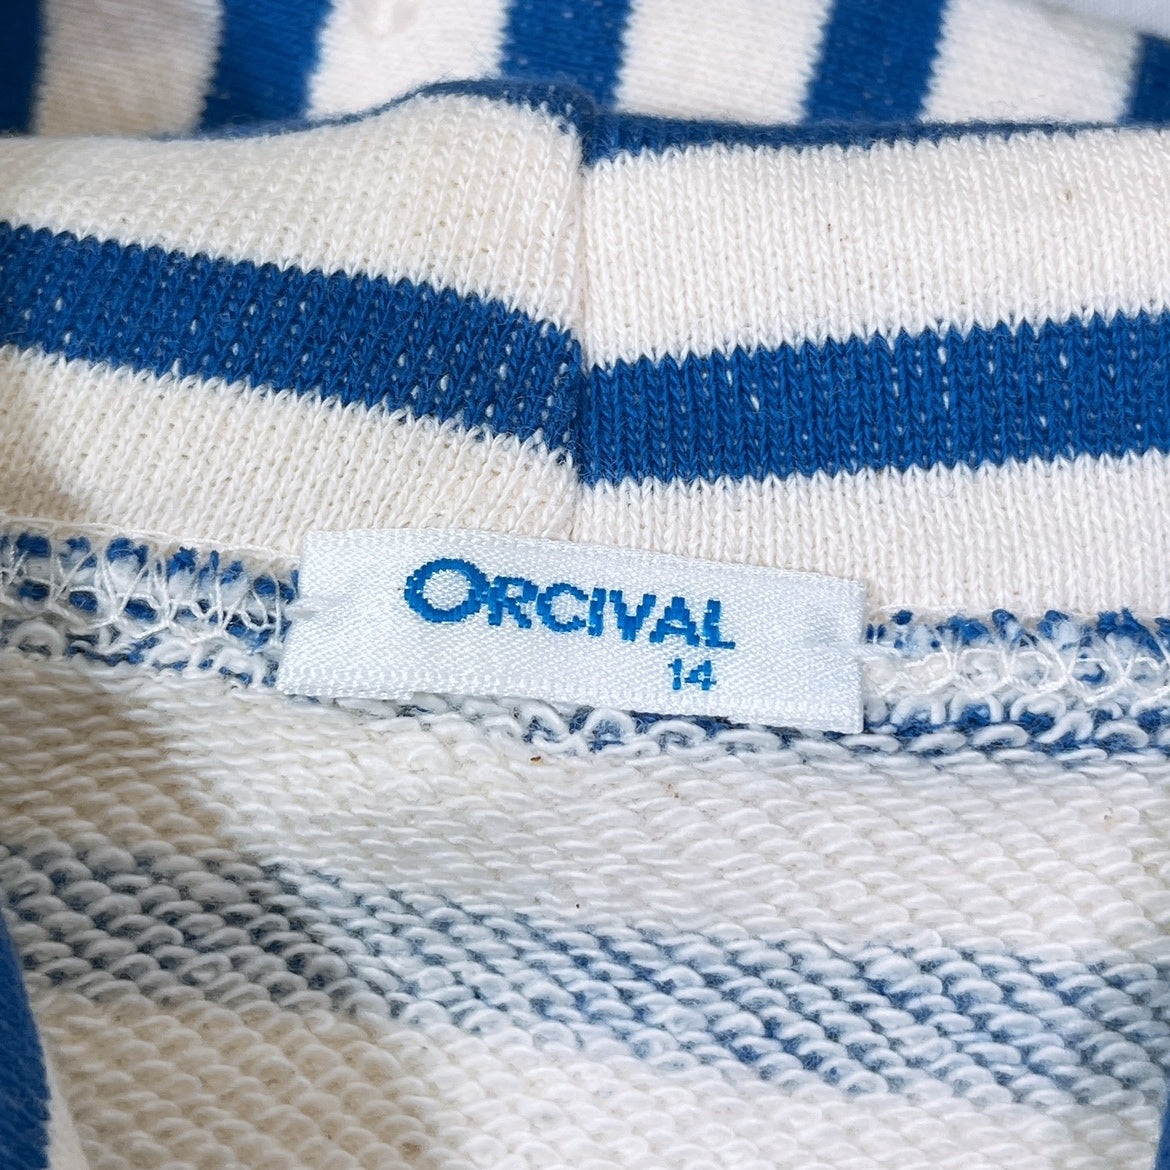 レディース14 ORCIVAL パーカー ホワイト ブルー 半袖 フード ポケット ボーダー シンプル 可愛い オーシバル 【17434】